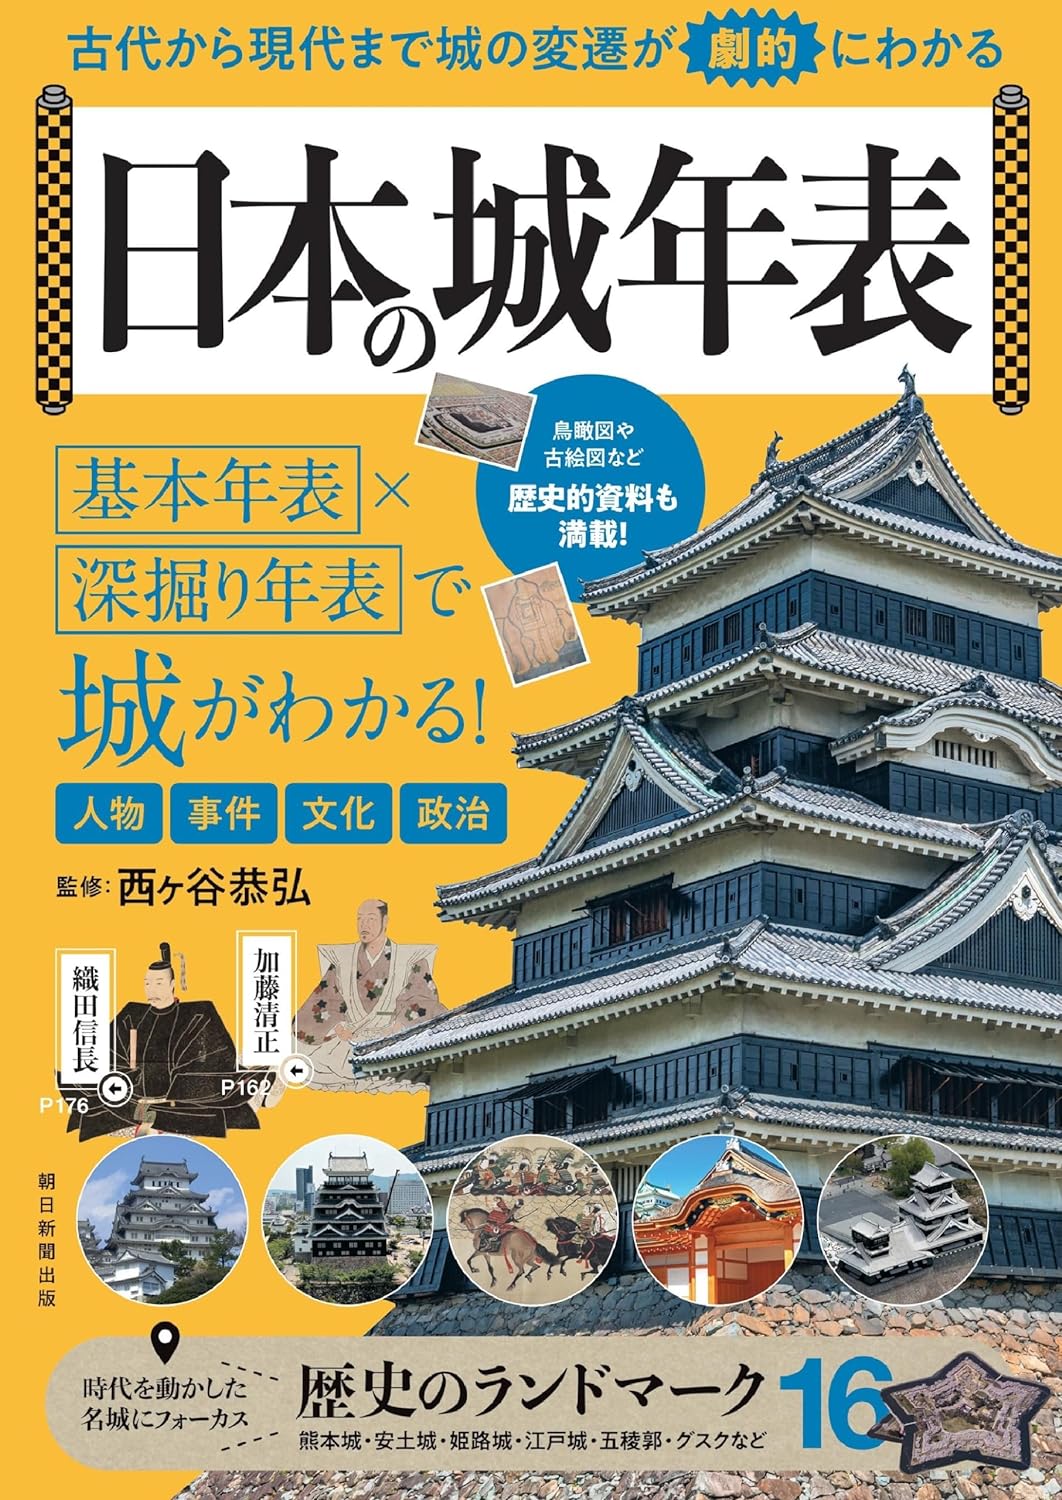 城が丸わかり『日本の城年表』なぜ面白い？の画像